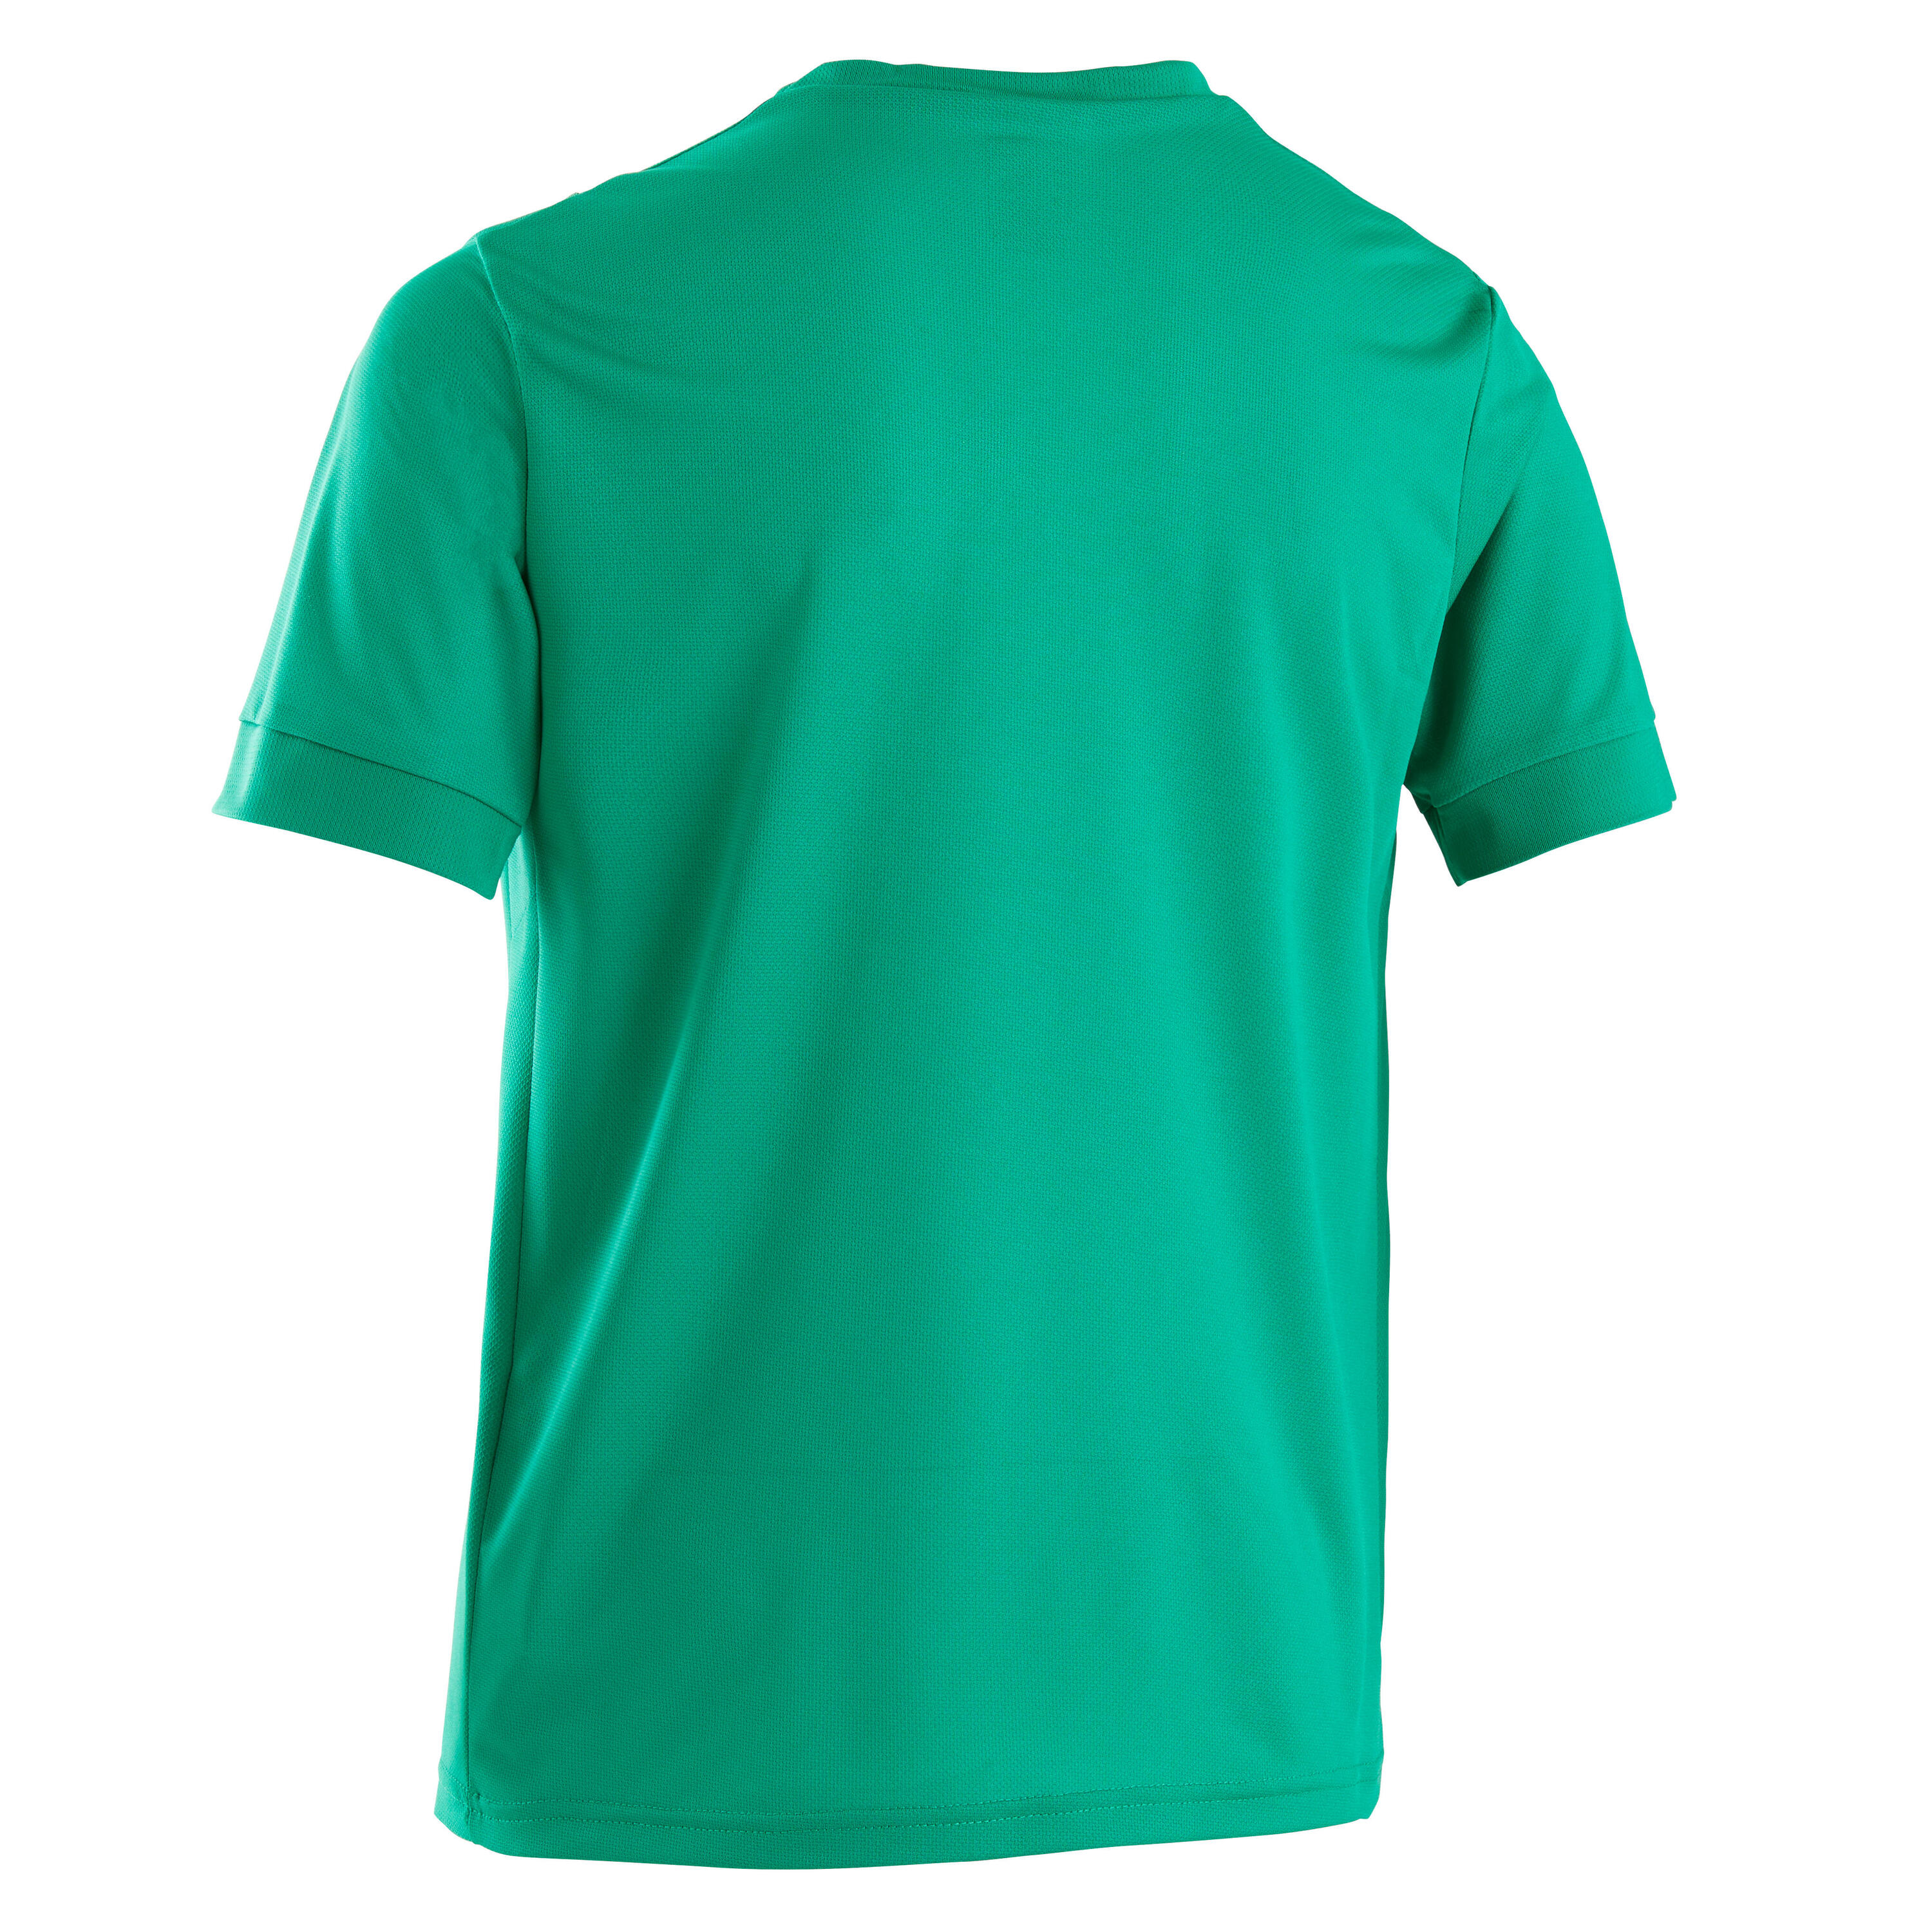 Kids' Short-Sleeved Football Shirt F500 - Plain Green 3/4